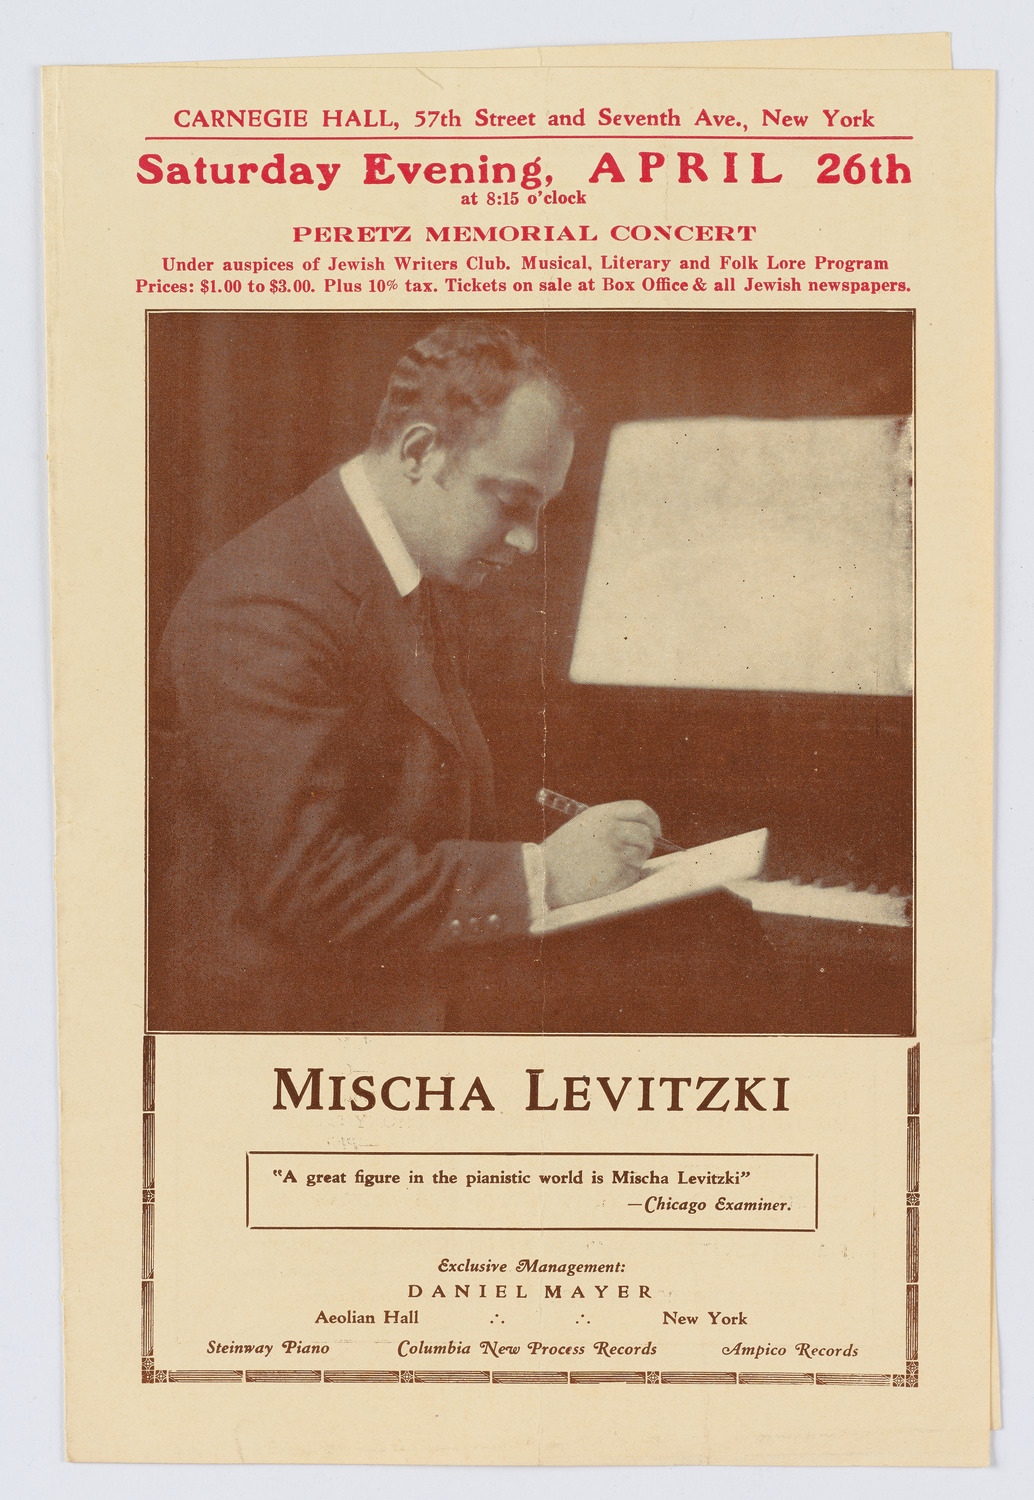 Mischa Levitzki, as part of Memorial: J.L. Peretz, April 26, 1924